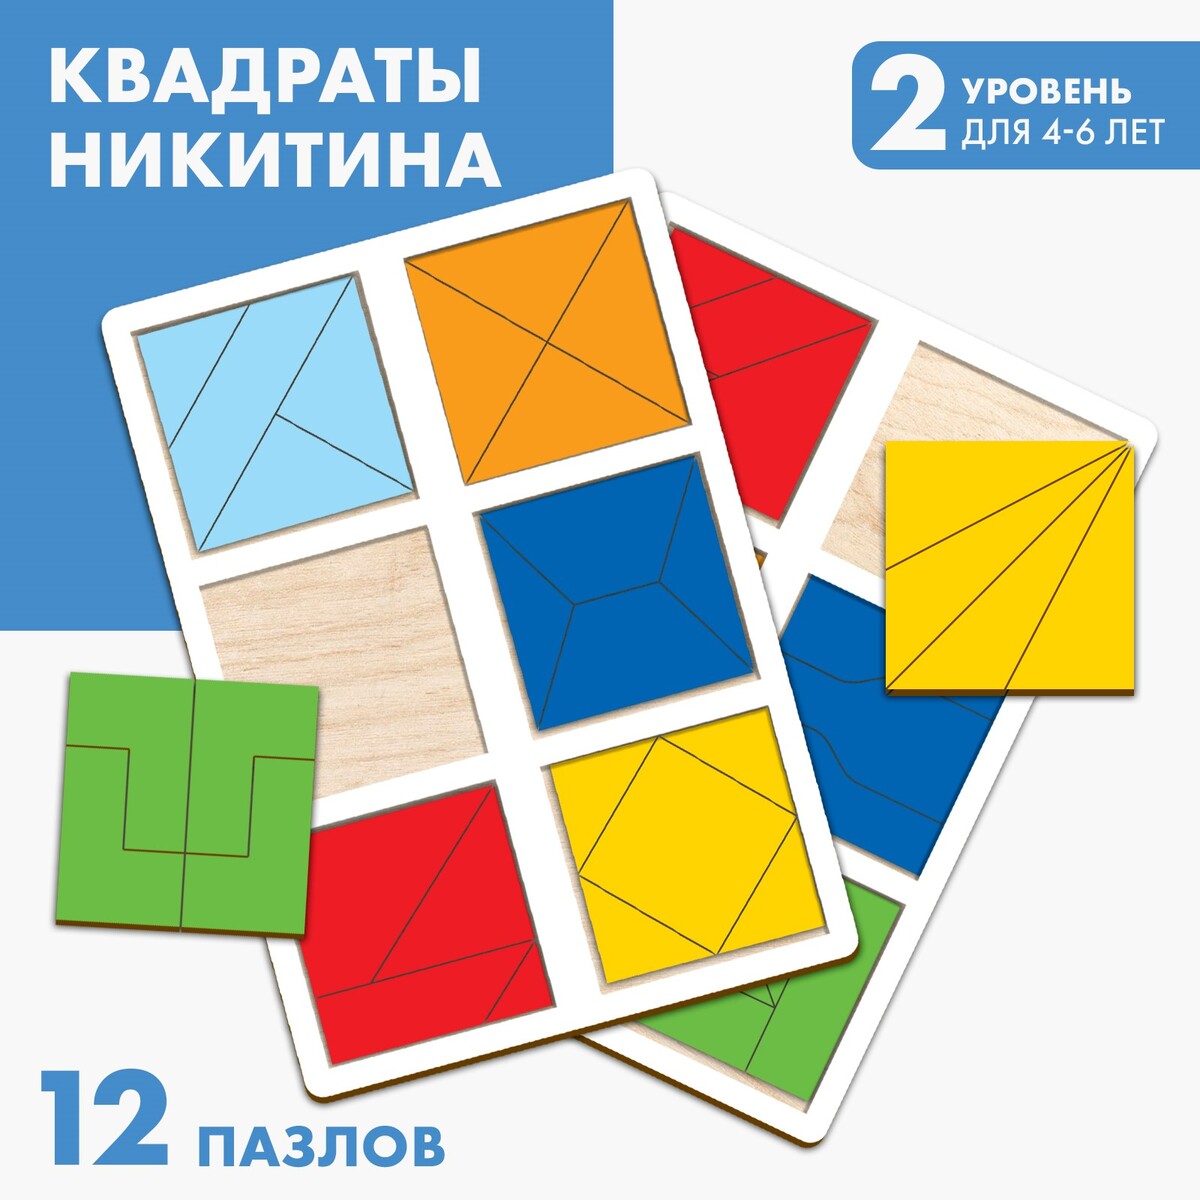 Квадраты 2 уровень (2 шт.), 12 квадратов квадраты 2 уровень 2 планшета